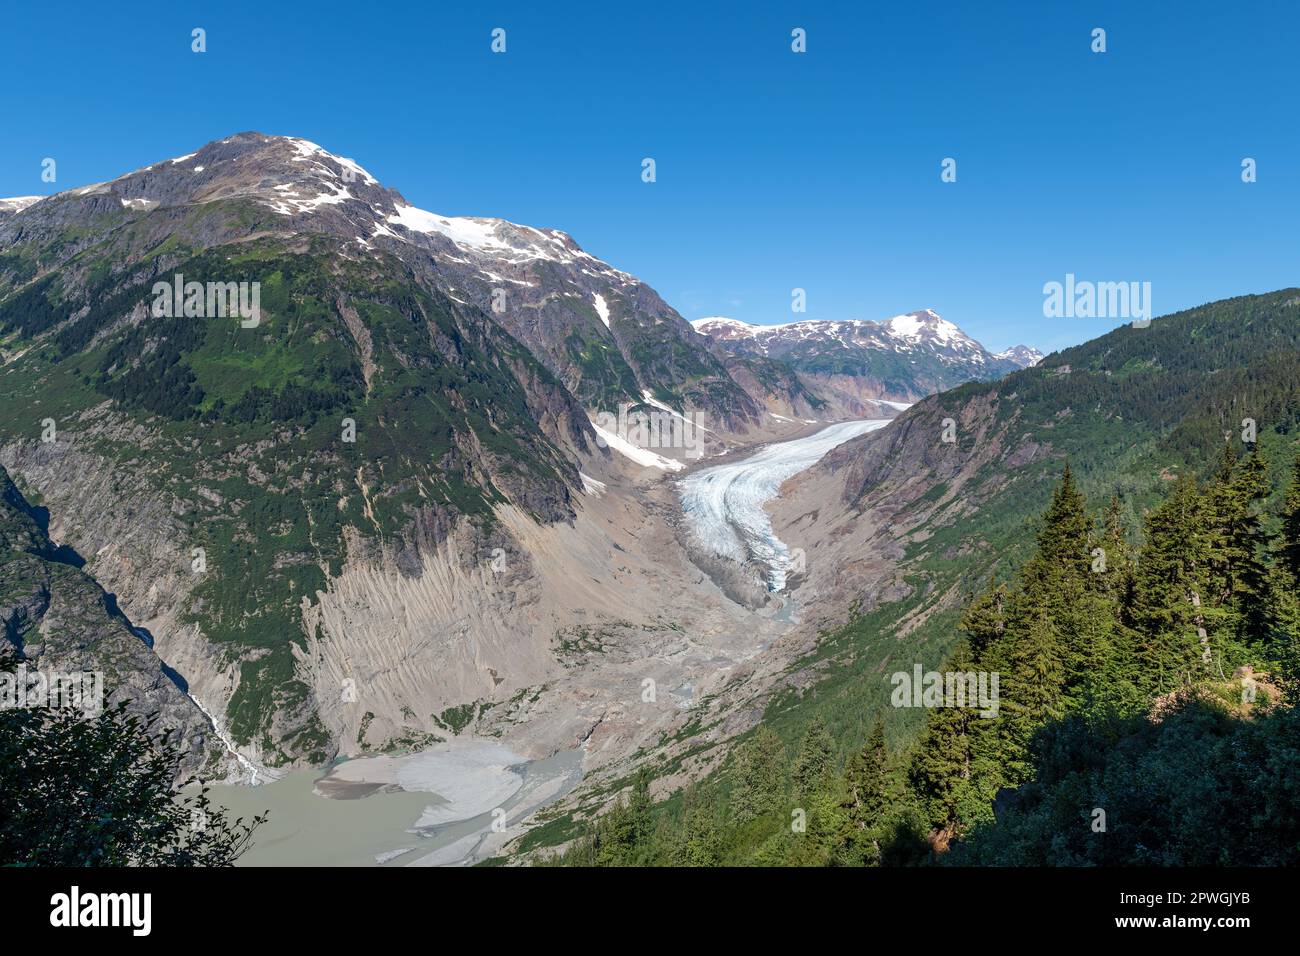 Glacier tongue of the Salmon Glacier, British Columbia, Canada. Stock Photo